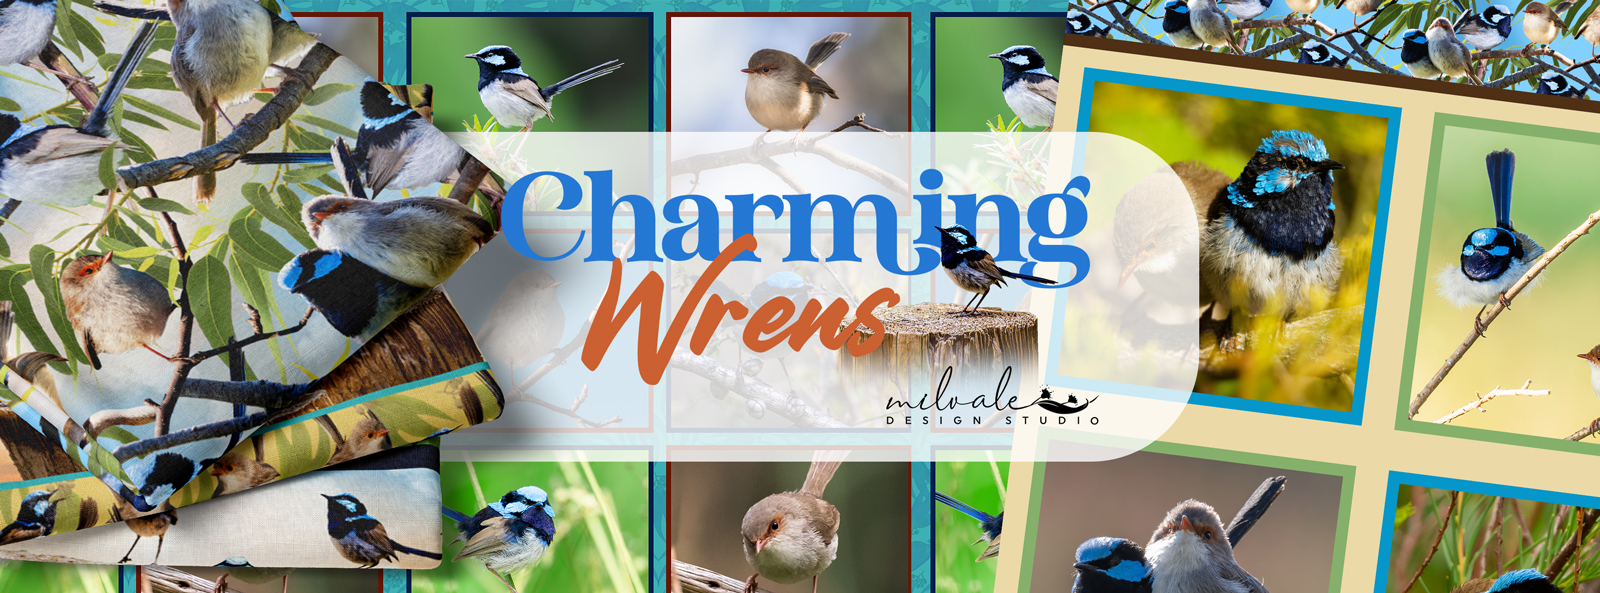 Charming Wrens - Website Banner